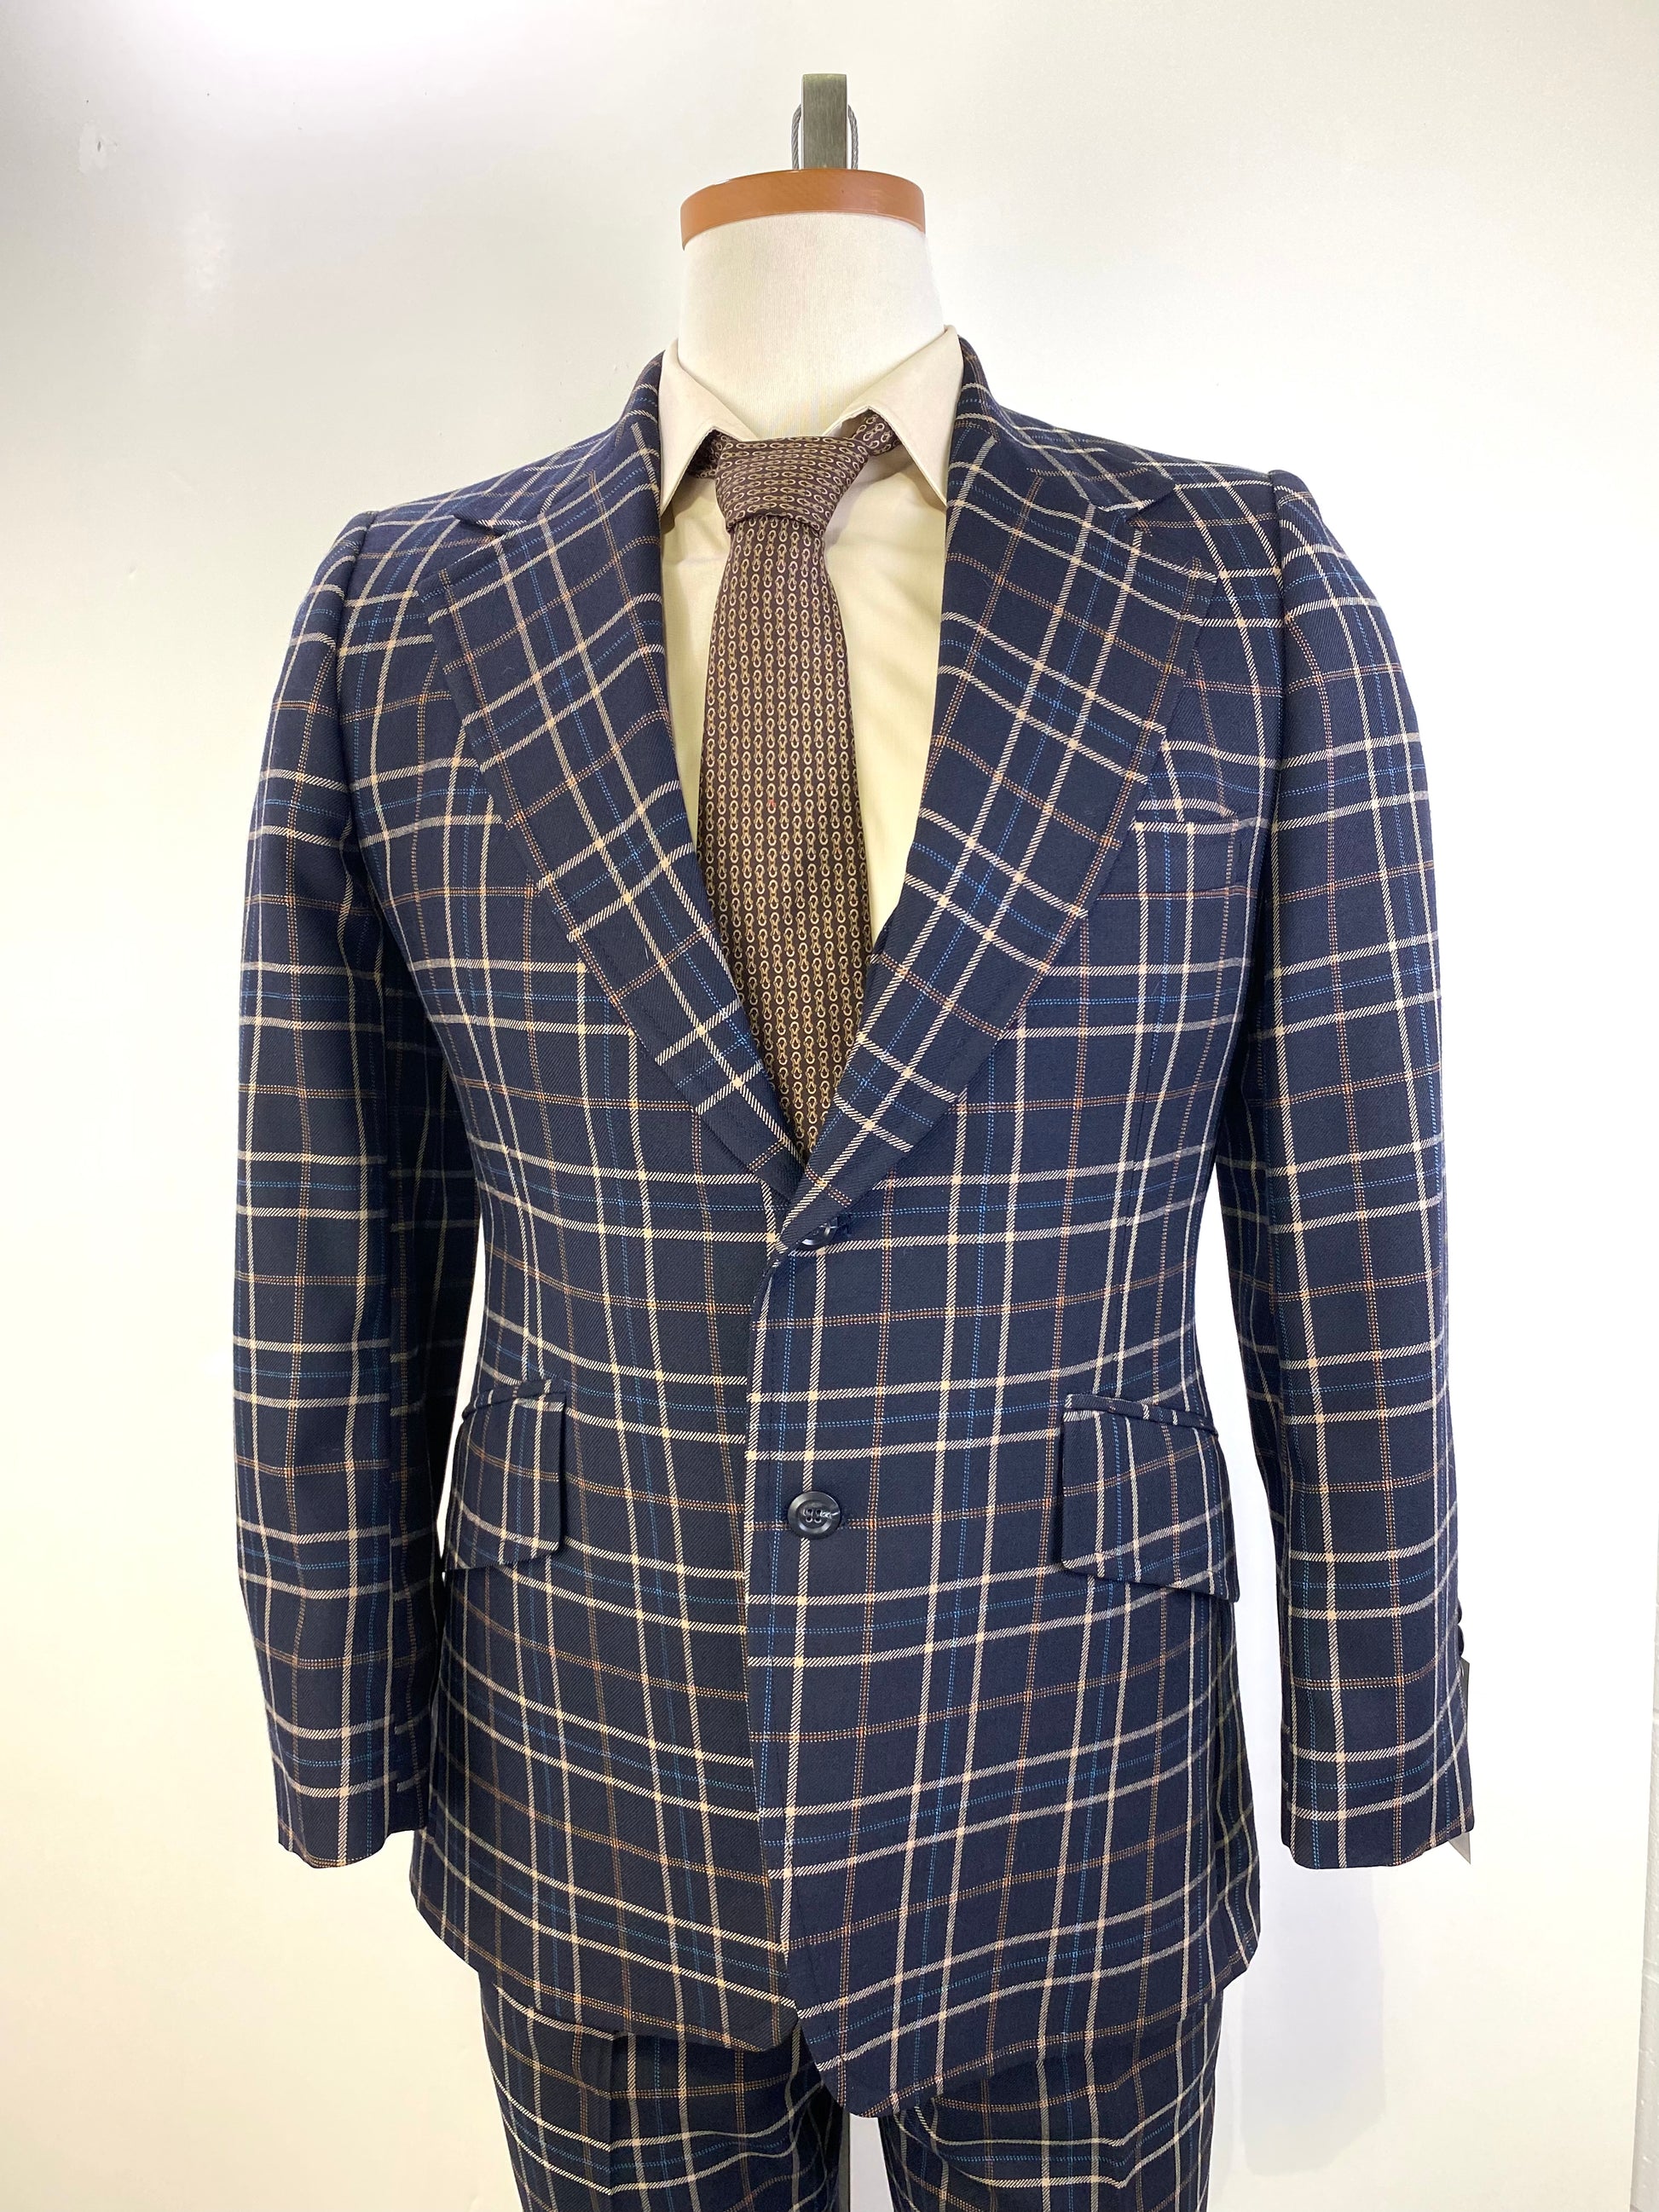 1970s Vintage Men's Suit, Navy/ Beige Plaid 3-Piece Suit, Johnny Carson for Kleinhan's, C40